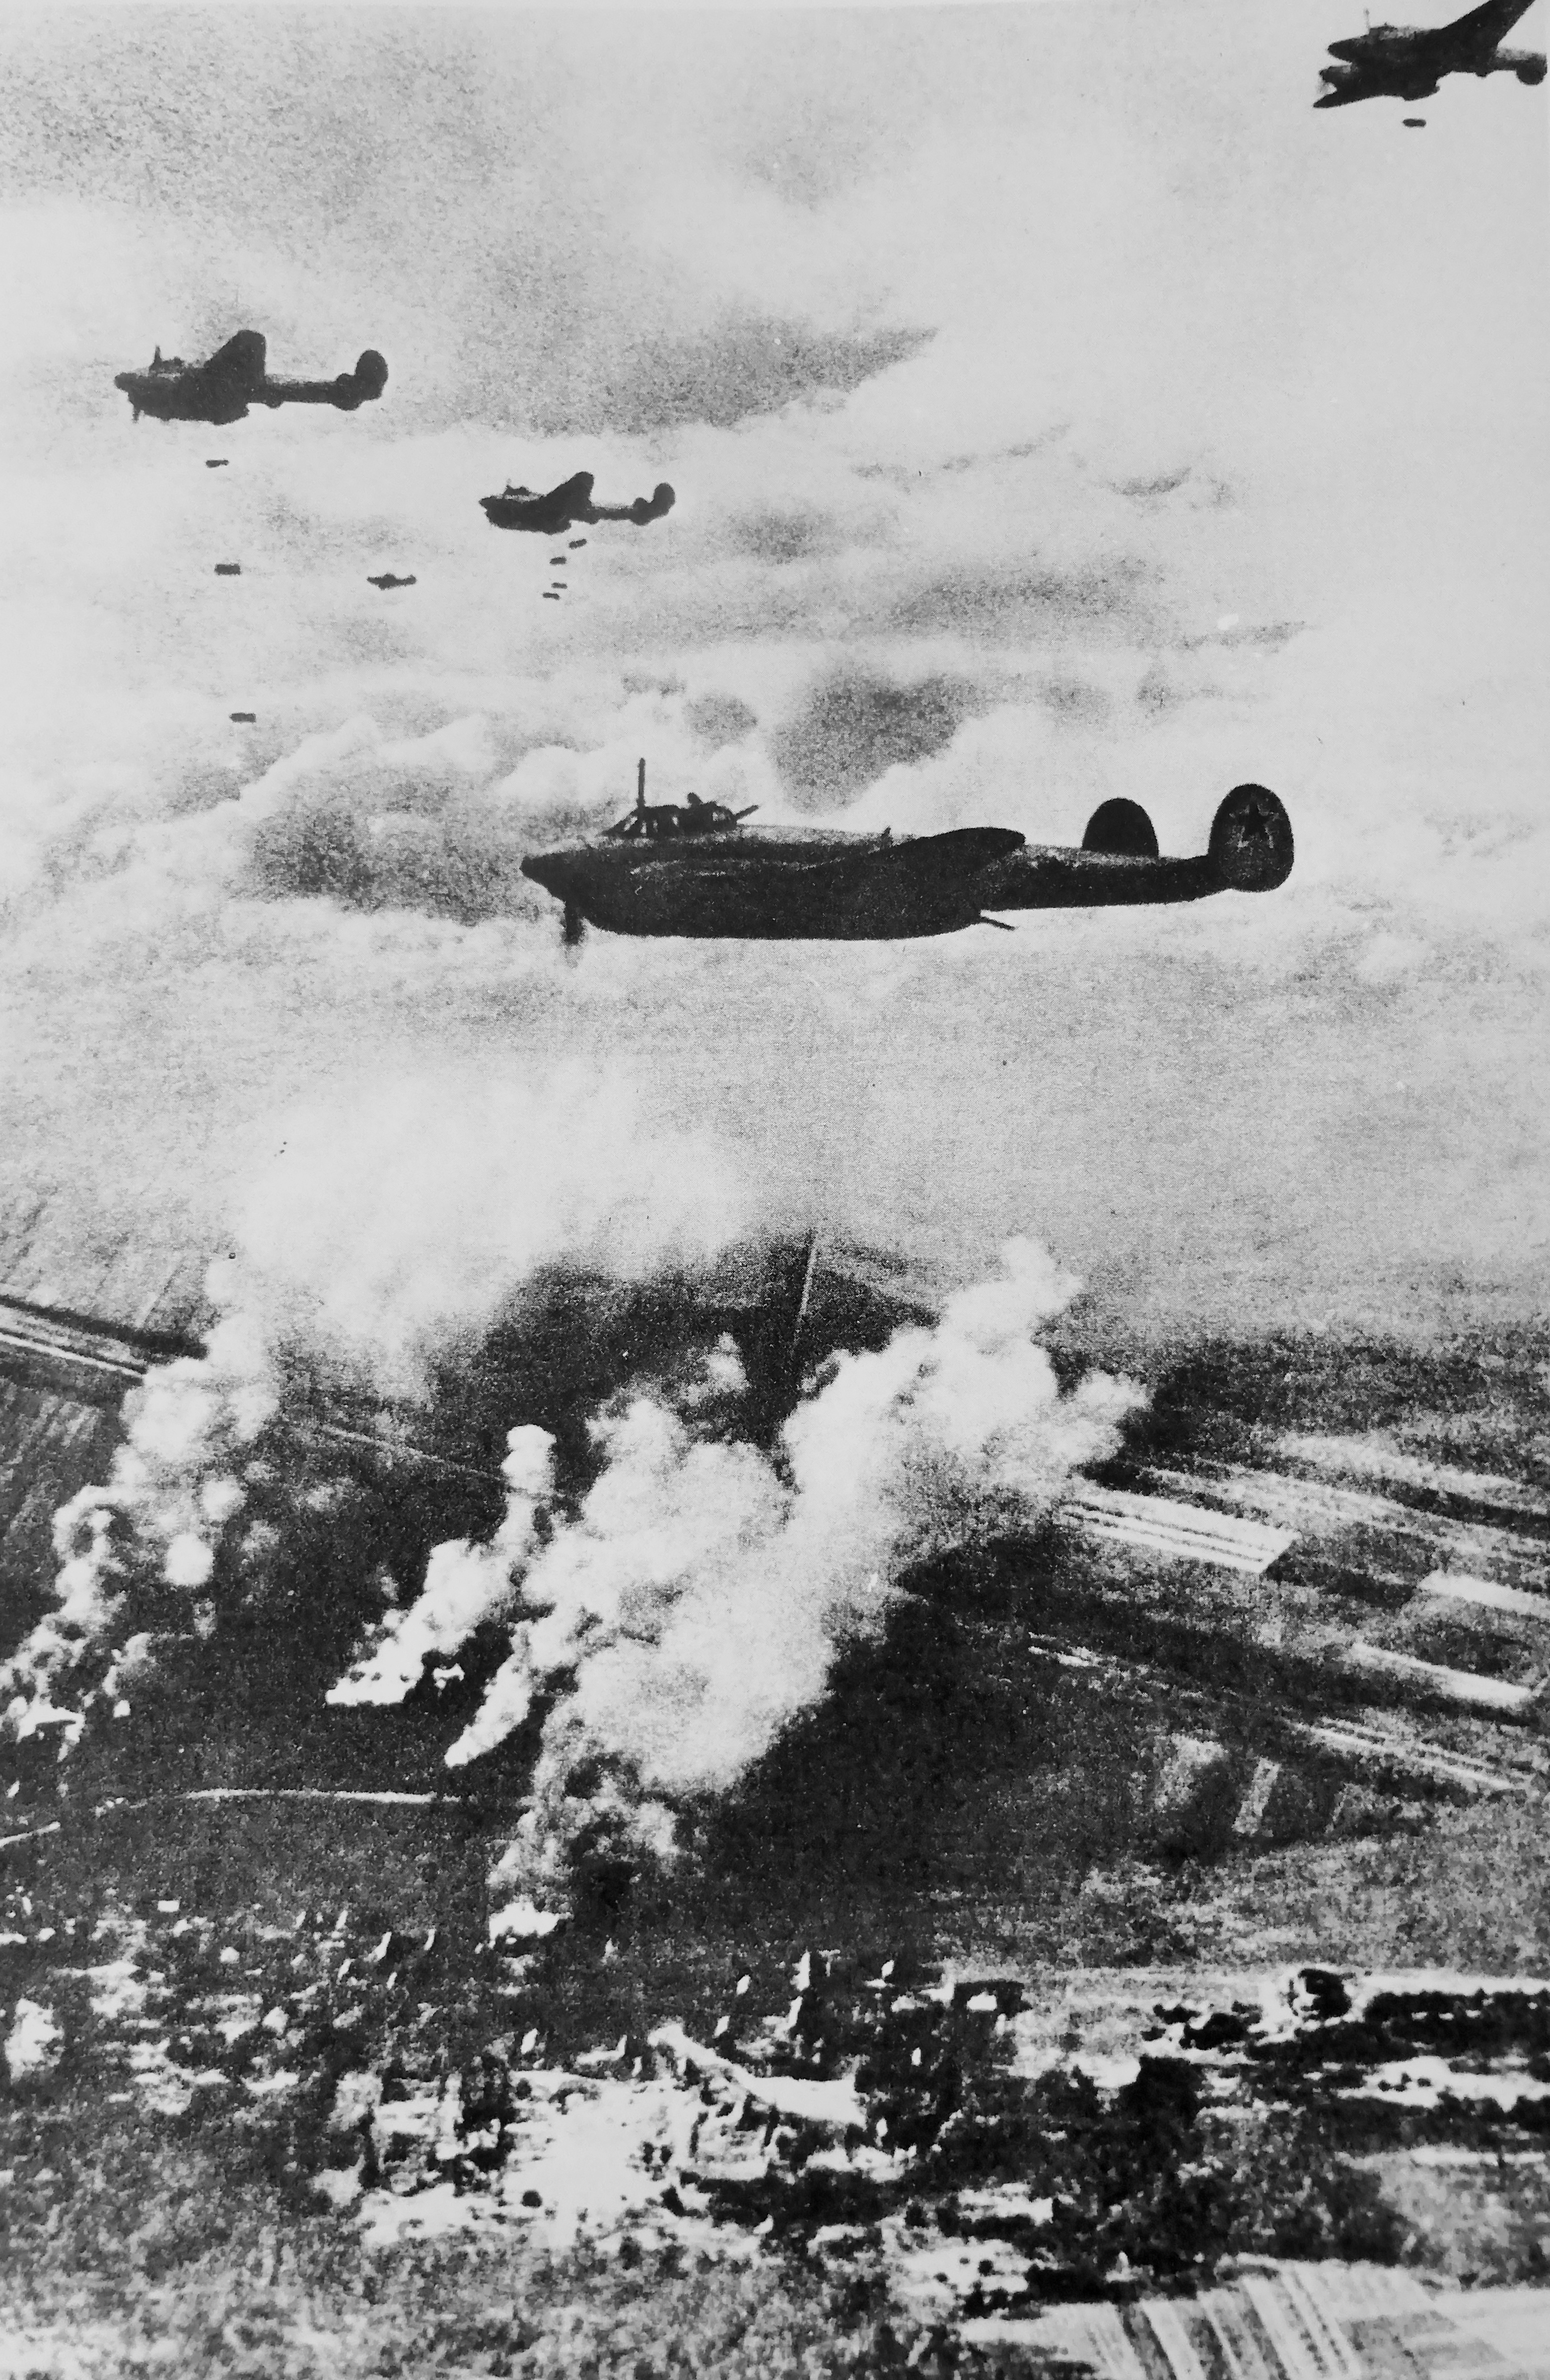 22 июня вов. ВОВ 22 июня 1941 самолеты. Бомбардировщики которые бомбили Берлин в 1941 году. Войны 1941-1945 самолеты бомбят.